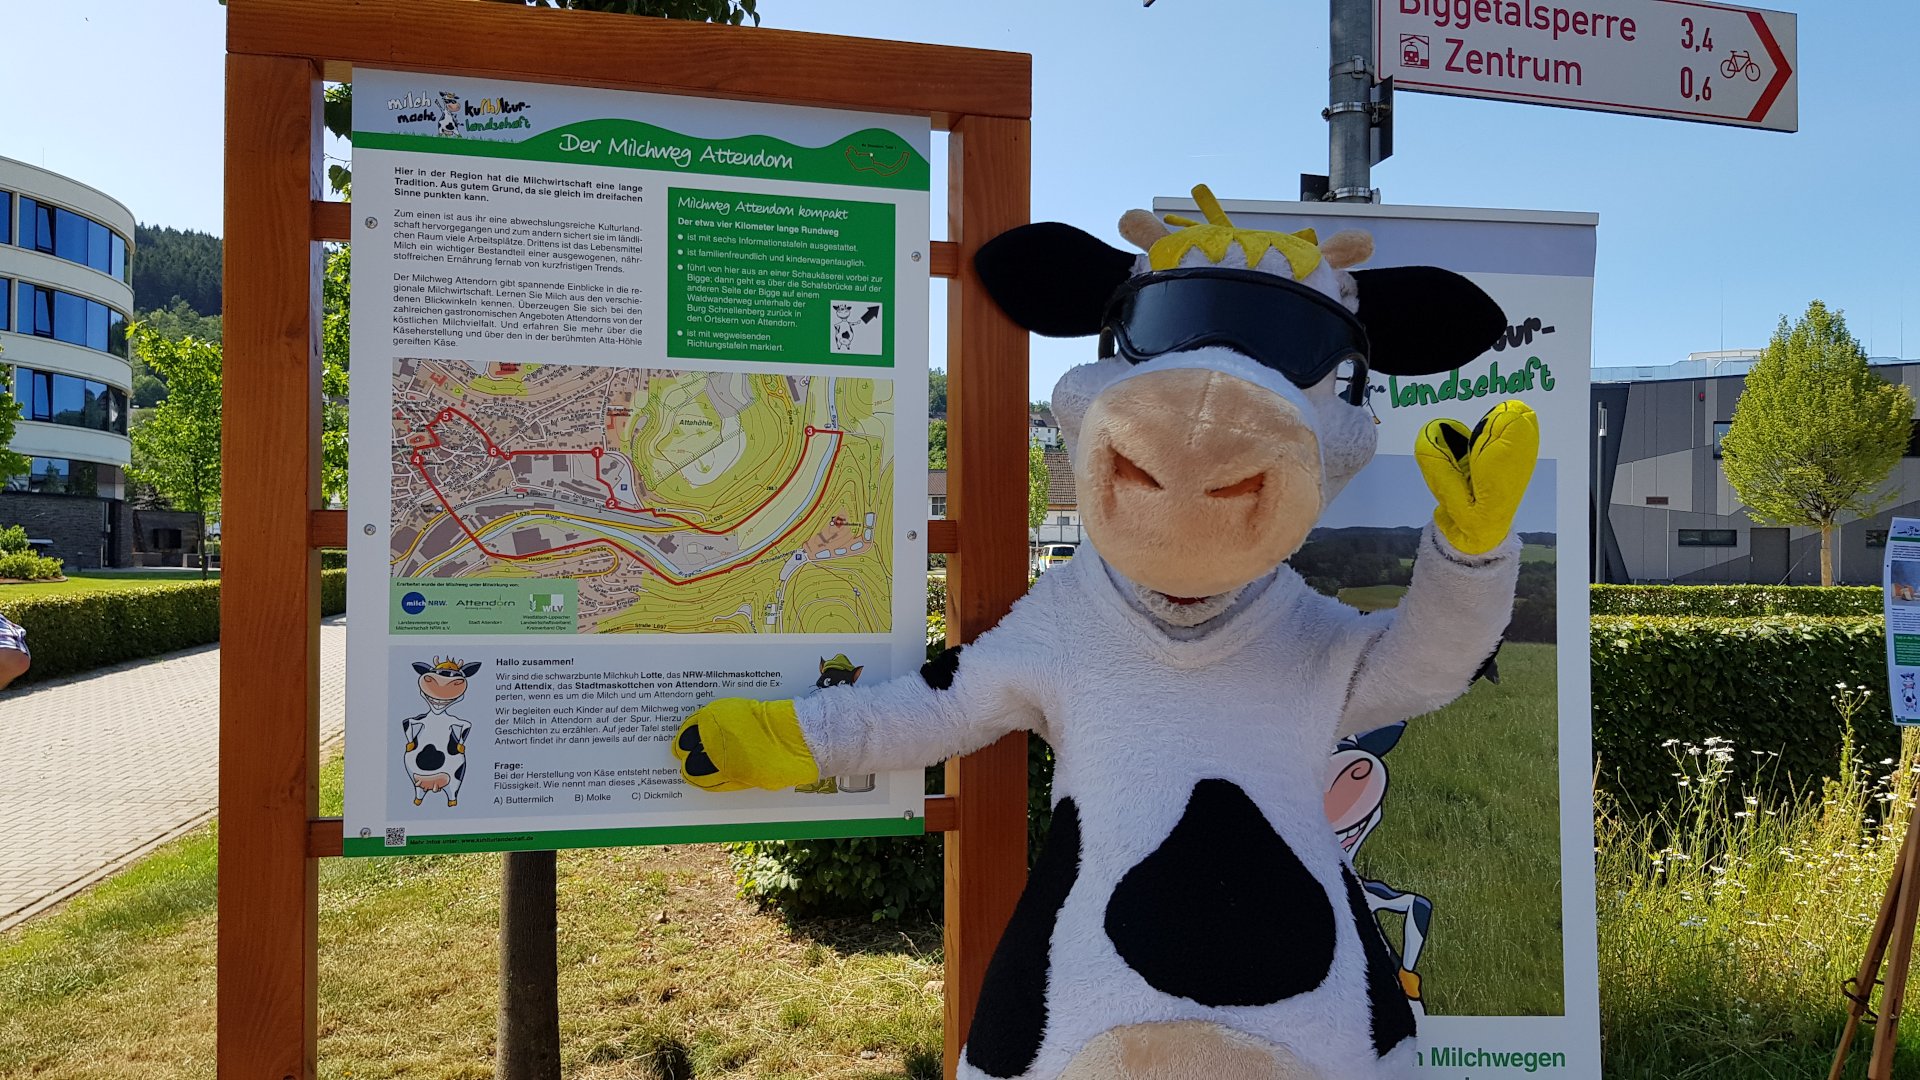 Foto: Milch-Maskottchen "Lotte" vor einer Info-Tafel der Milchwege (Copyright: milch-nrw.de)